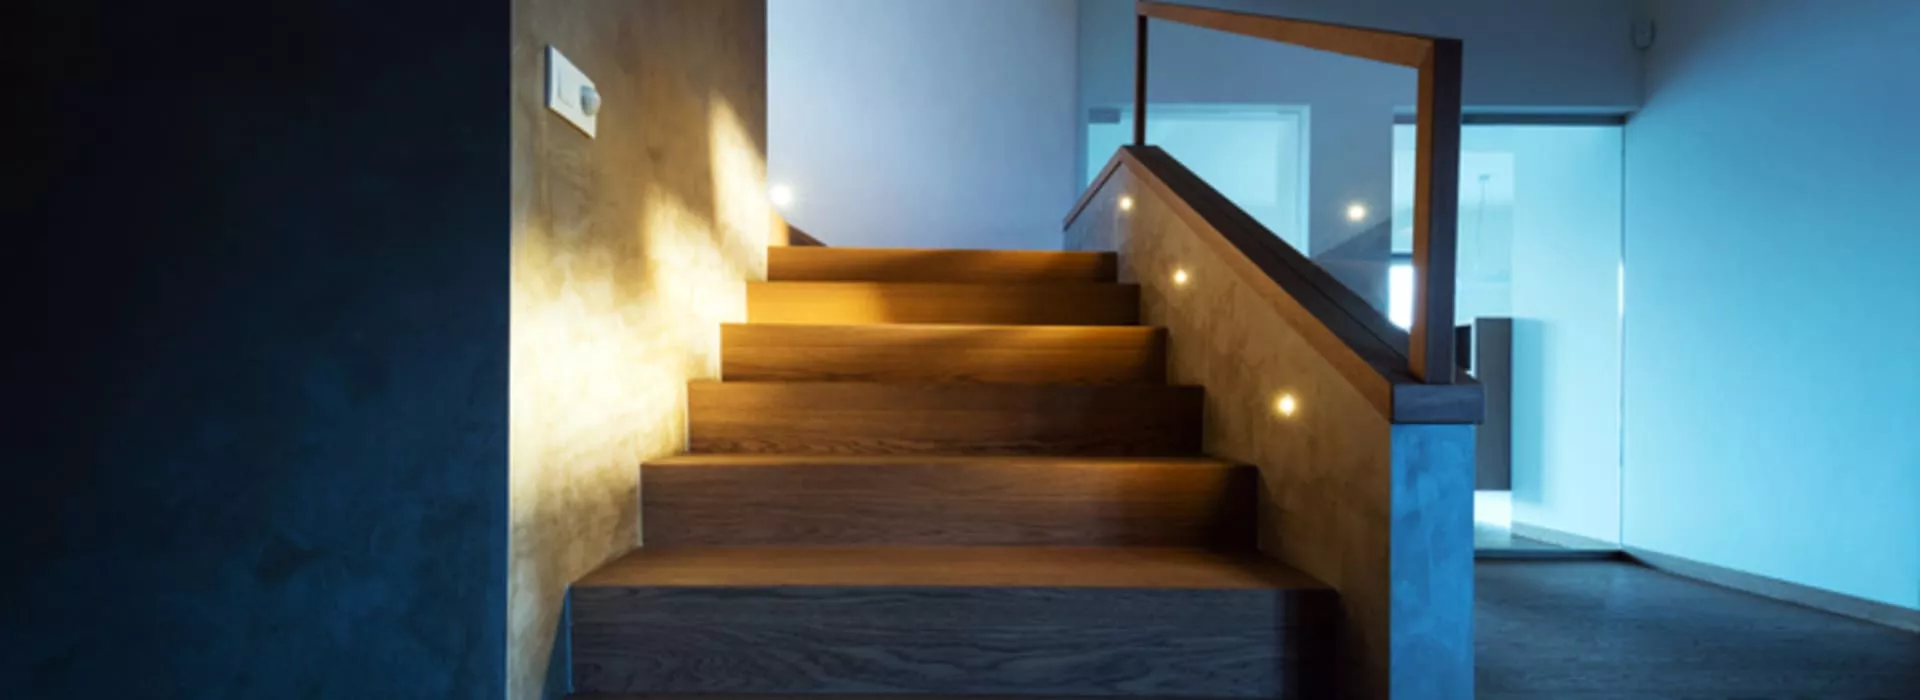 Las Escaleras Con Iluminación LED Pueden Agregar Una Estética